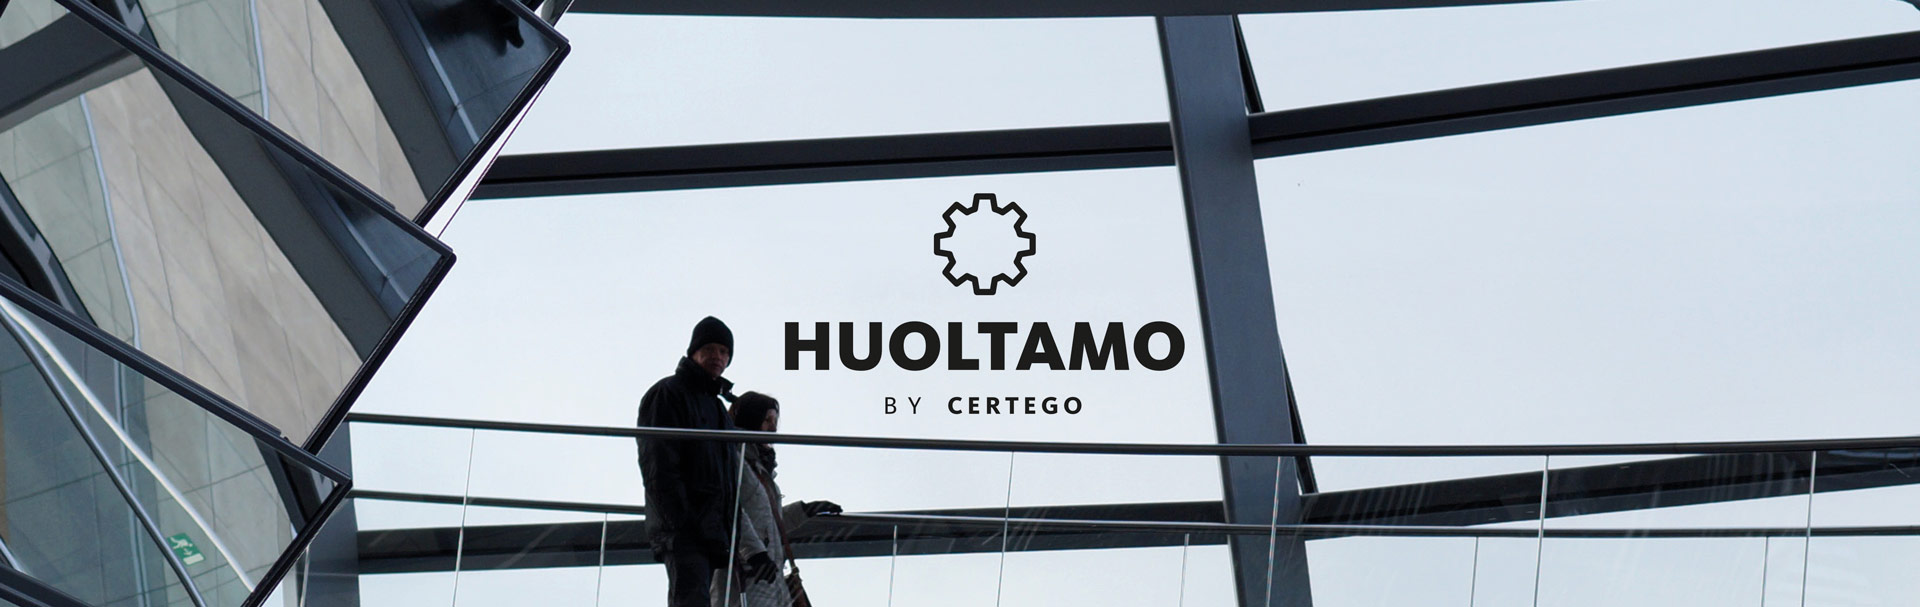 huoltamo_logo+banneri